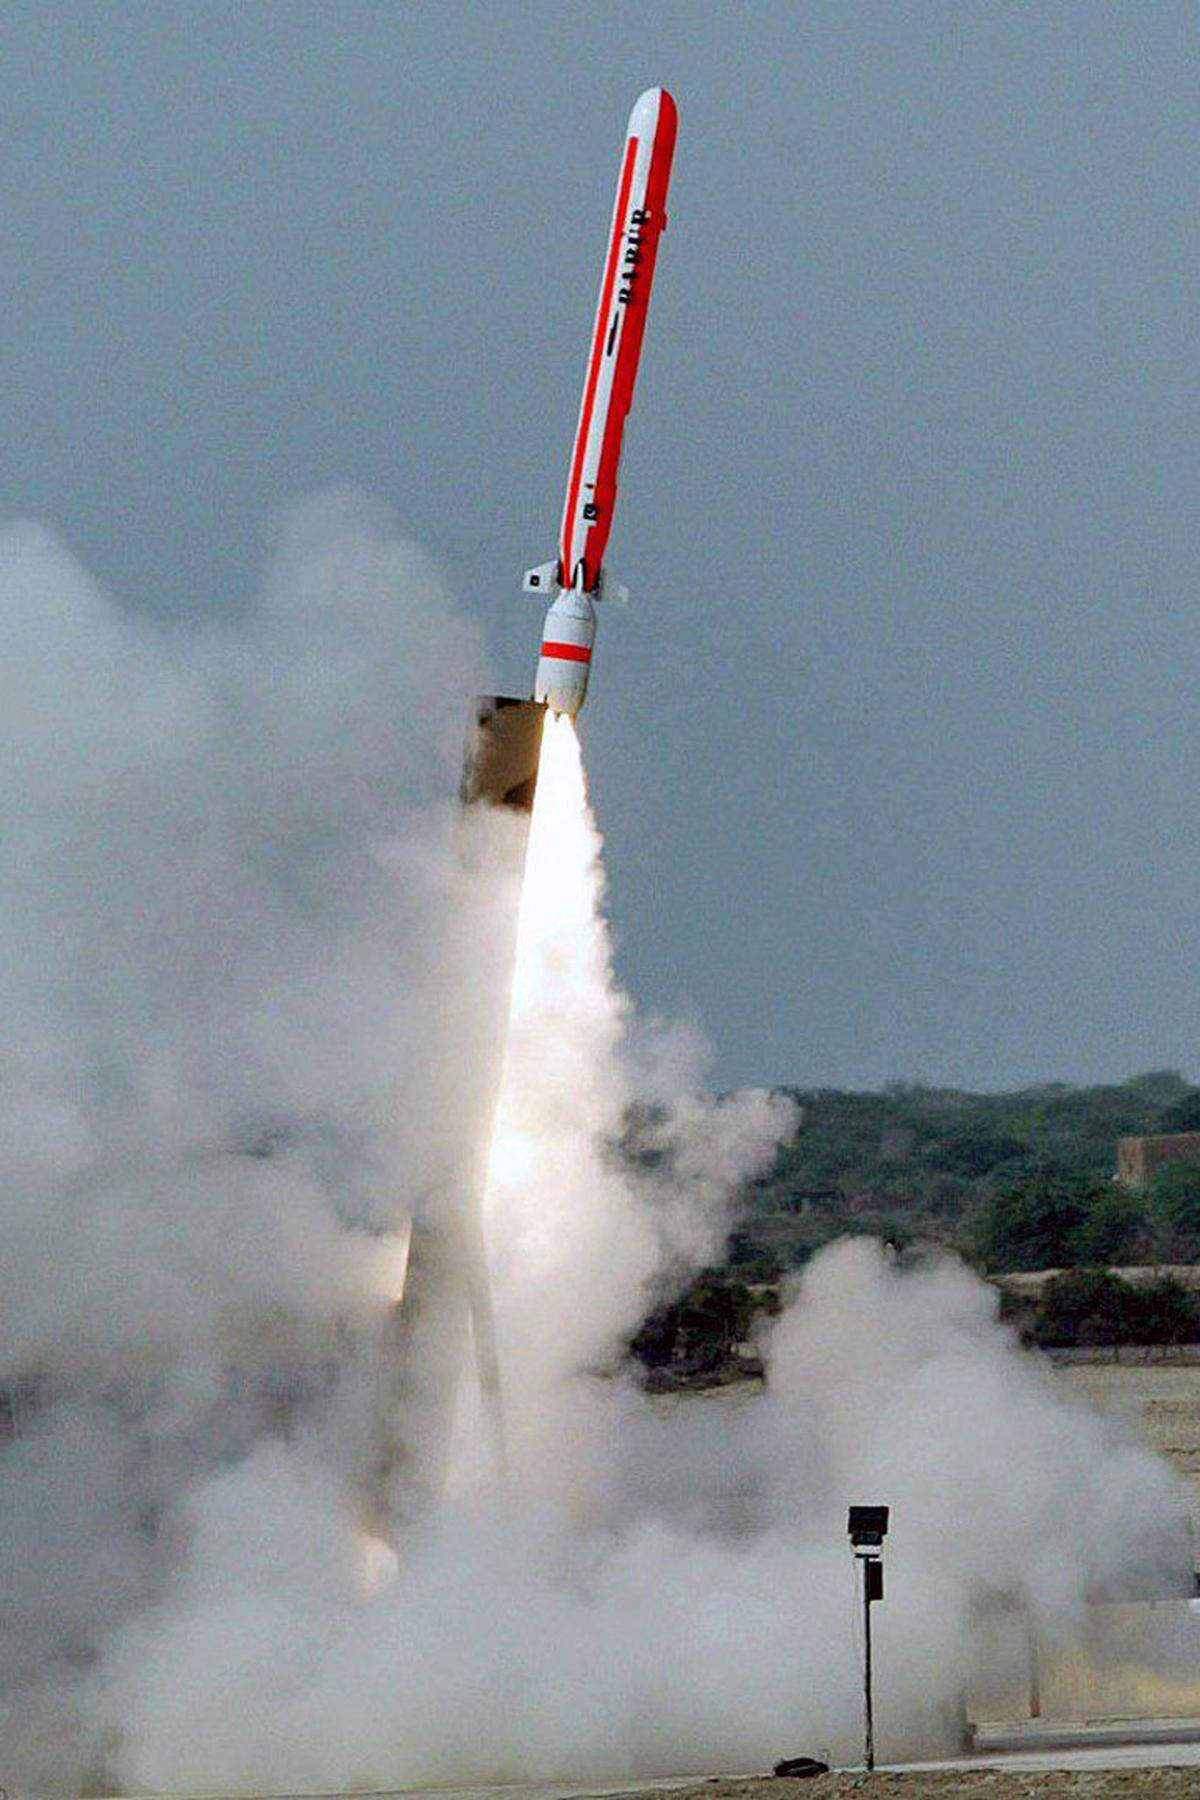 Seither schoss Pakistan vier weitere Raketen in den Himmel. Die bisher letzte wurde am 5. Juni getestet. Bei ihr handelte es sich um den Typ Hatf VII. Laut dem pakistanischen Außenministerium soll sie eine Reichweite von 700 Kilometern aufweisen und Atomsprengköpfe transportieren können.